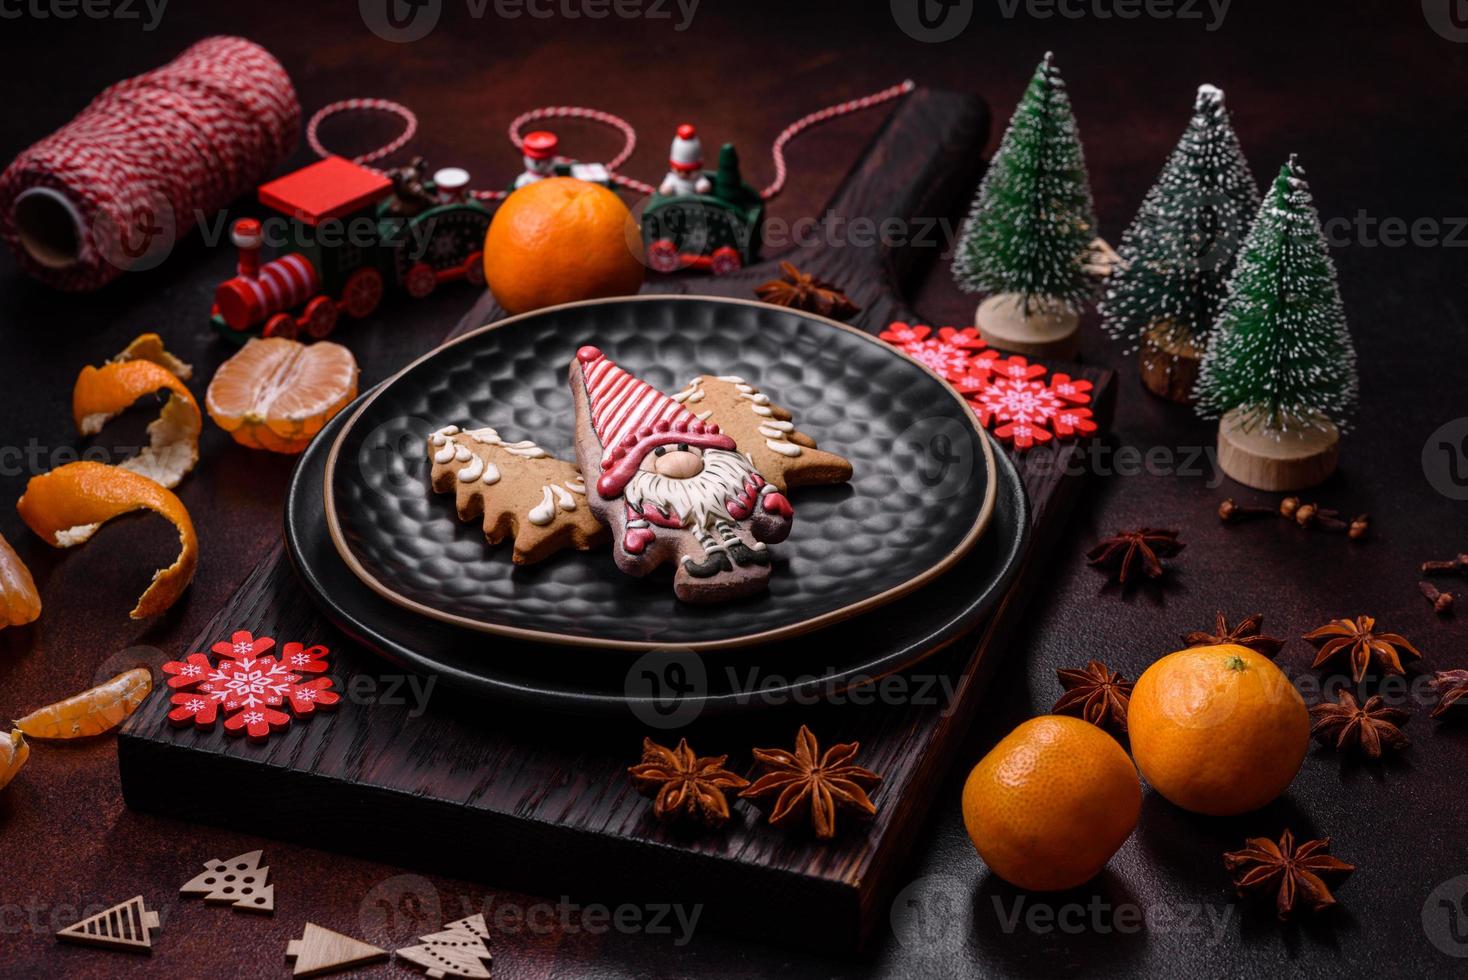 schöne weihnachtsdekorationen mit weihnachtsspielzeug, clementinen und lebkuchen foto